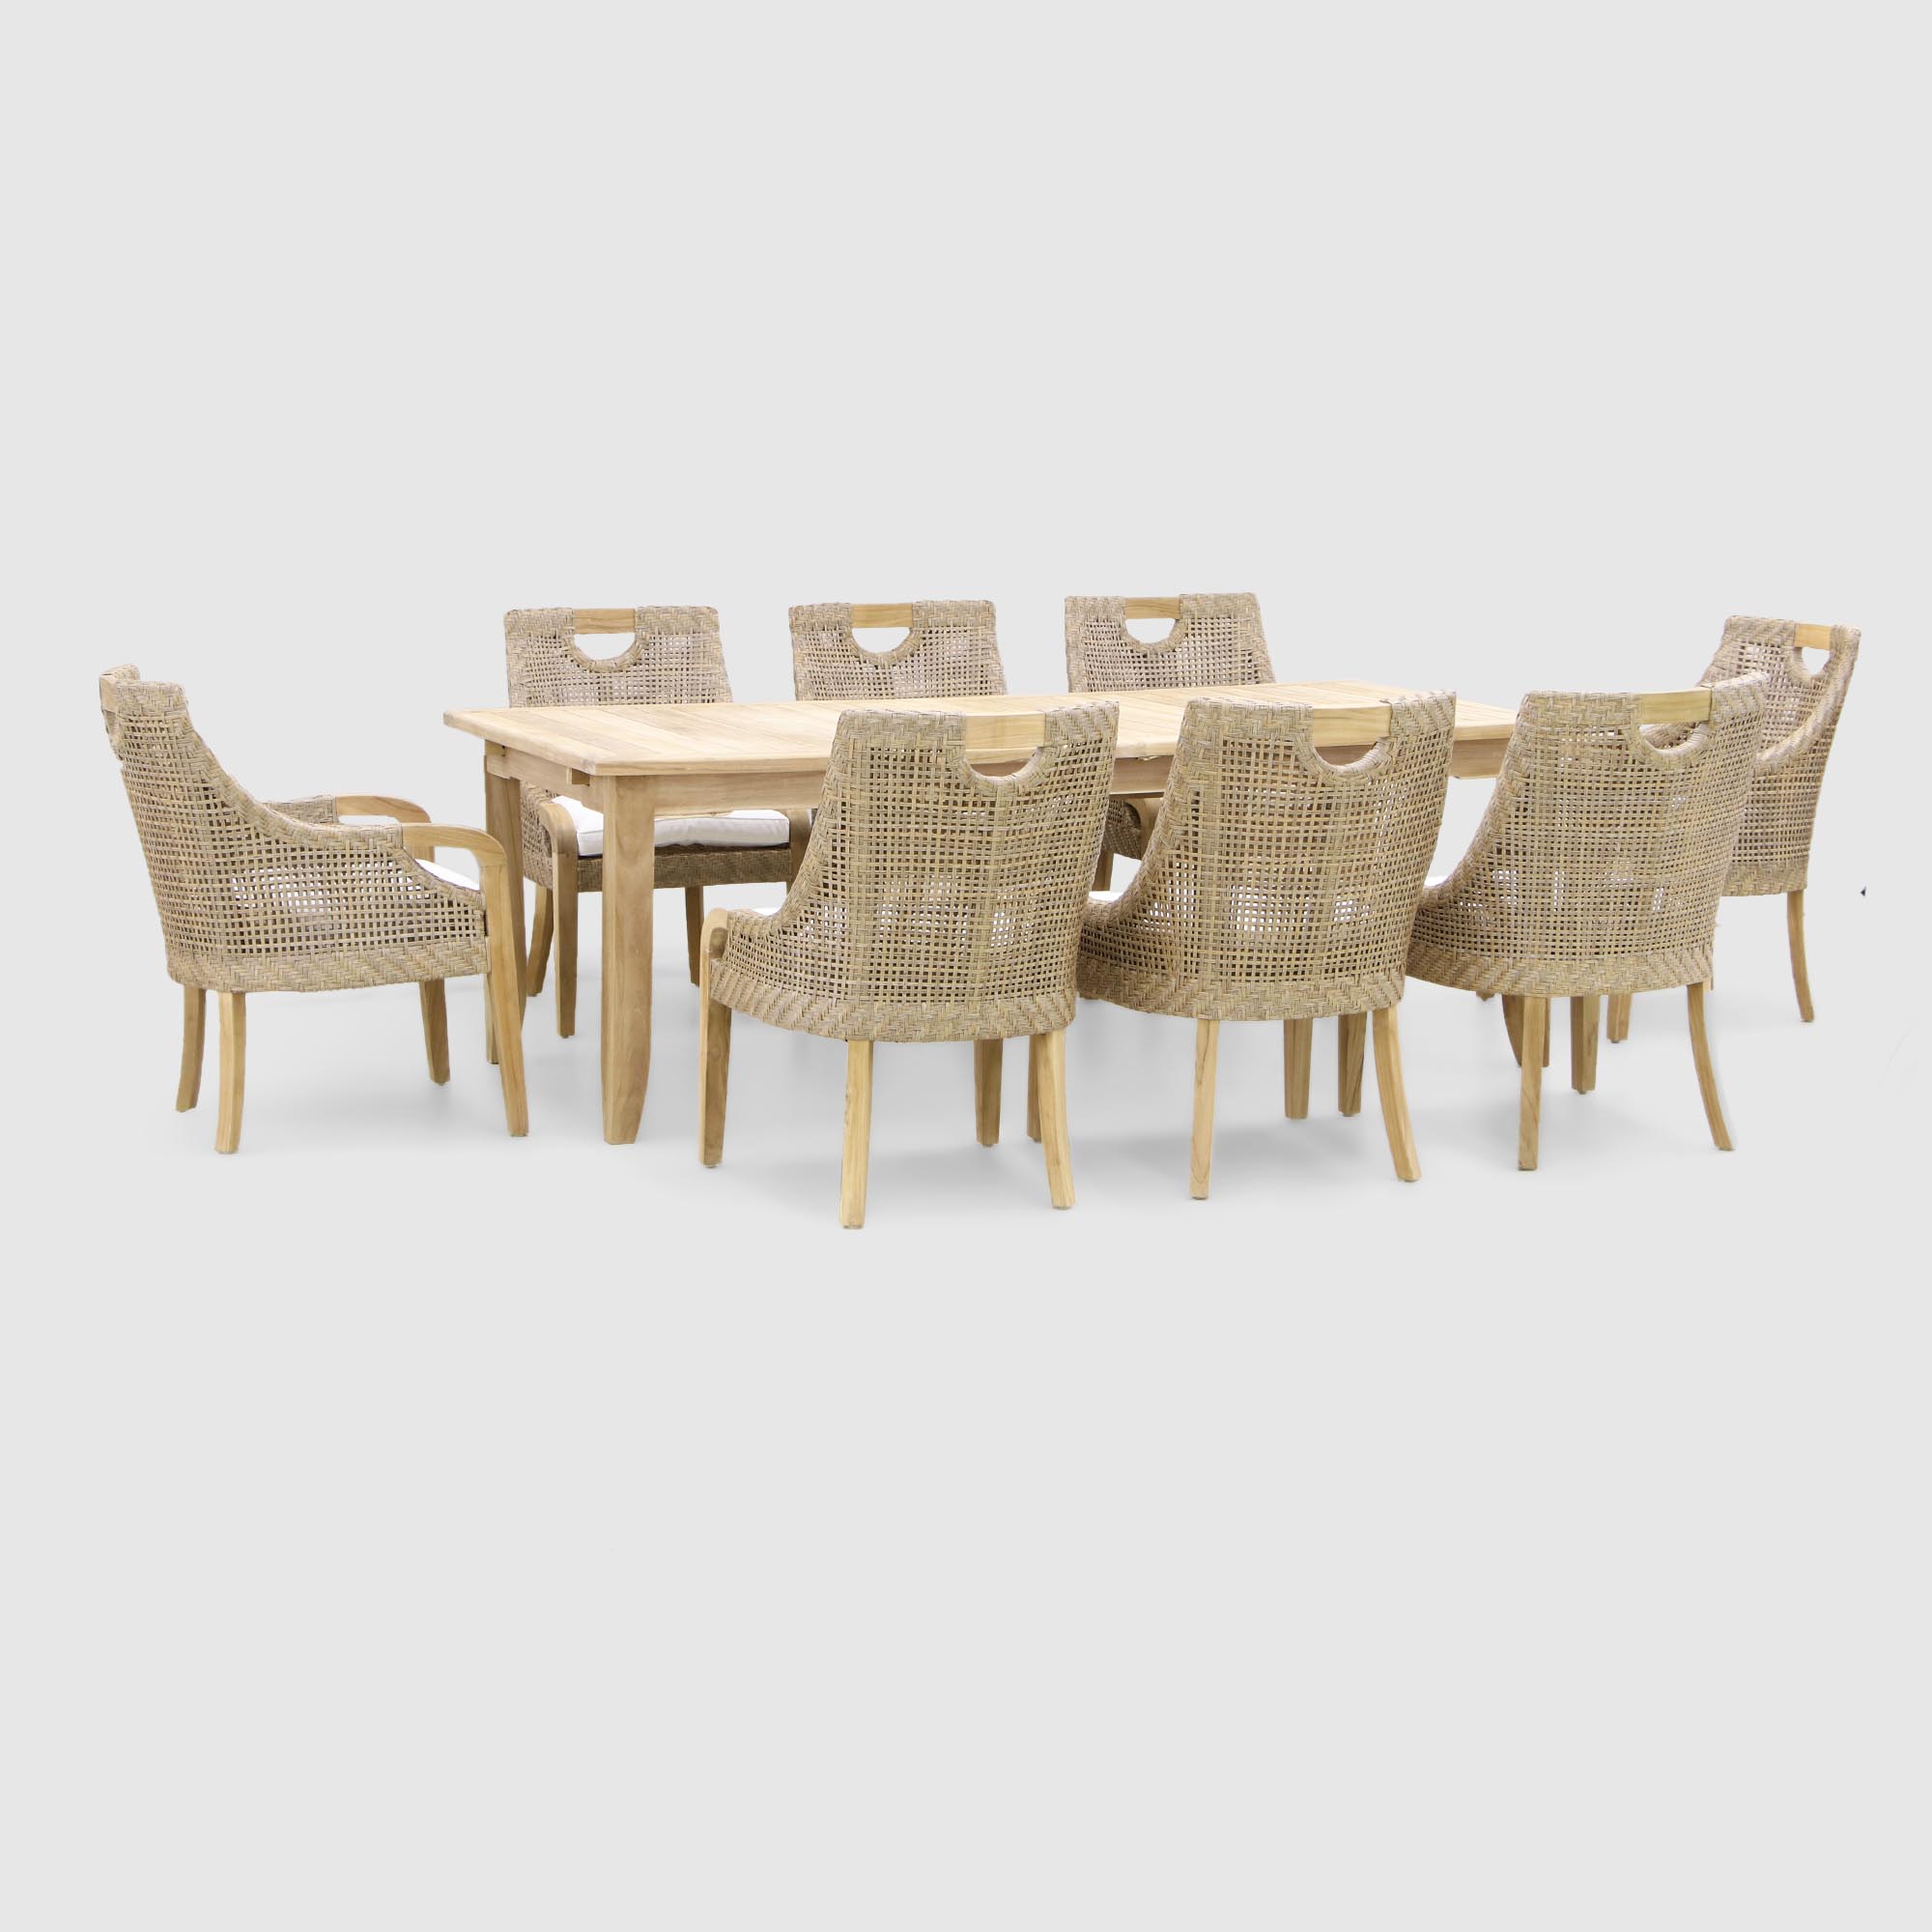 Комплект мебели Jepara curved из 9 предметов: 2 кресла+6 стульев+стол